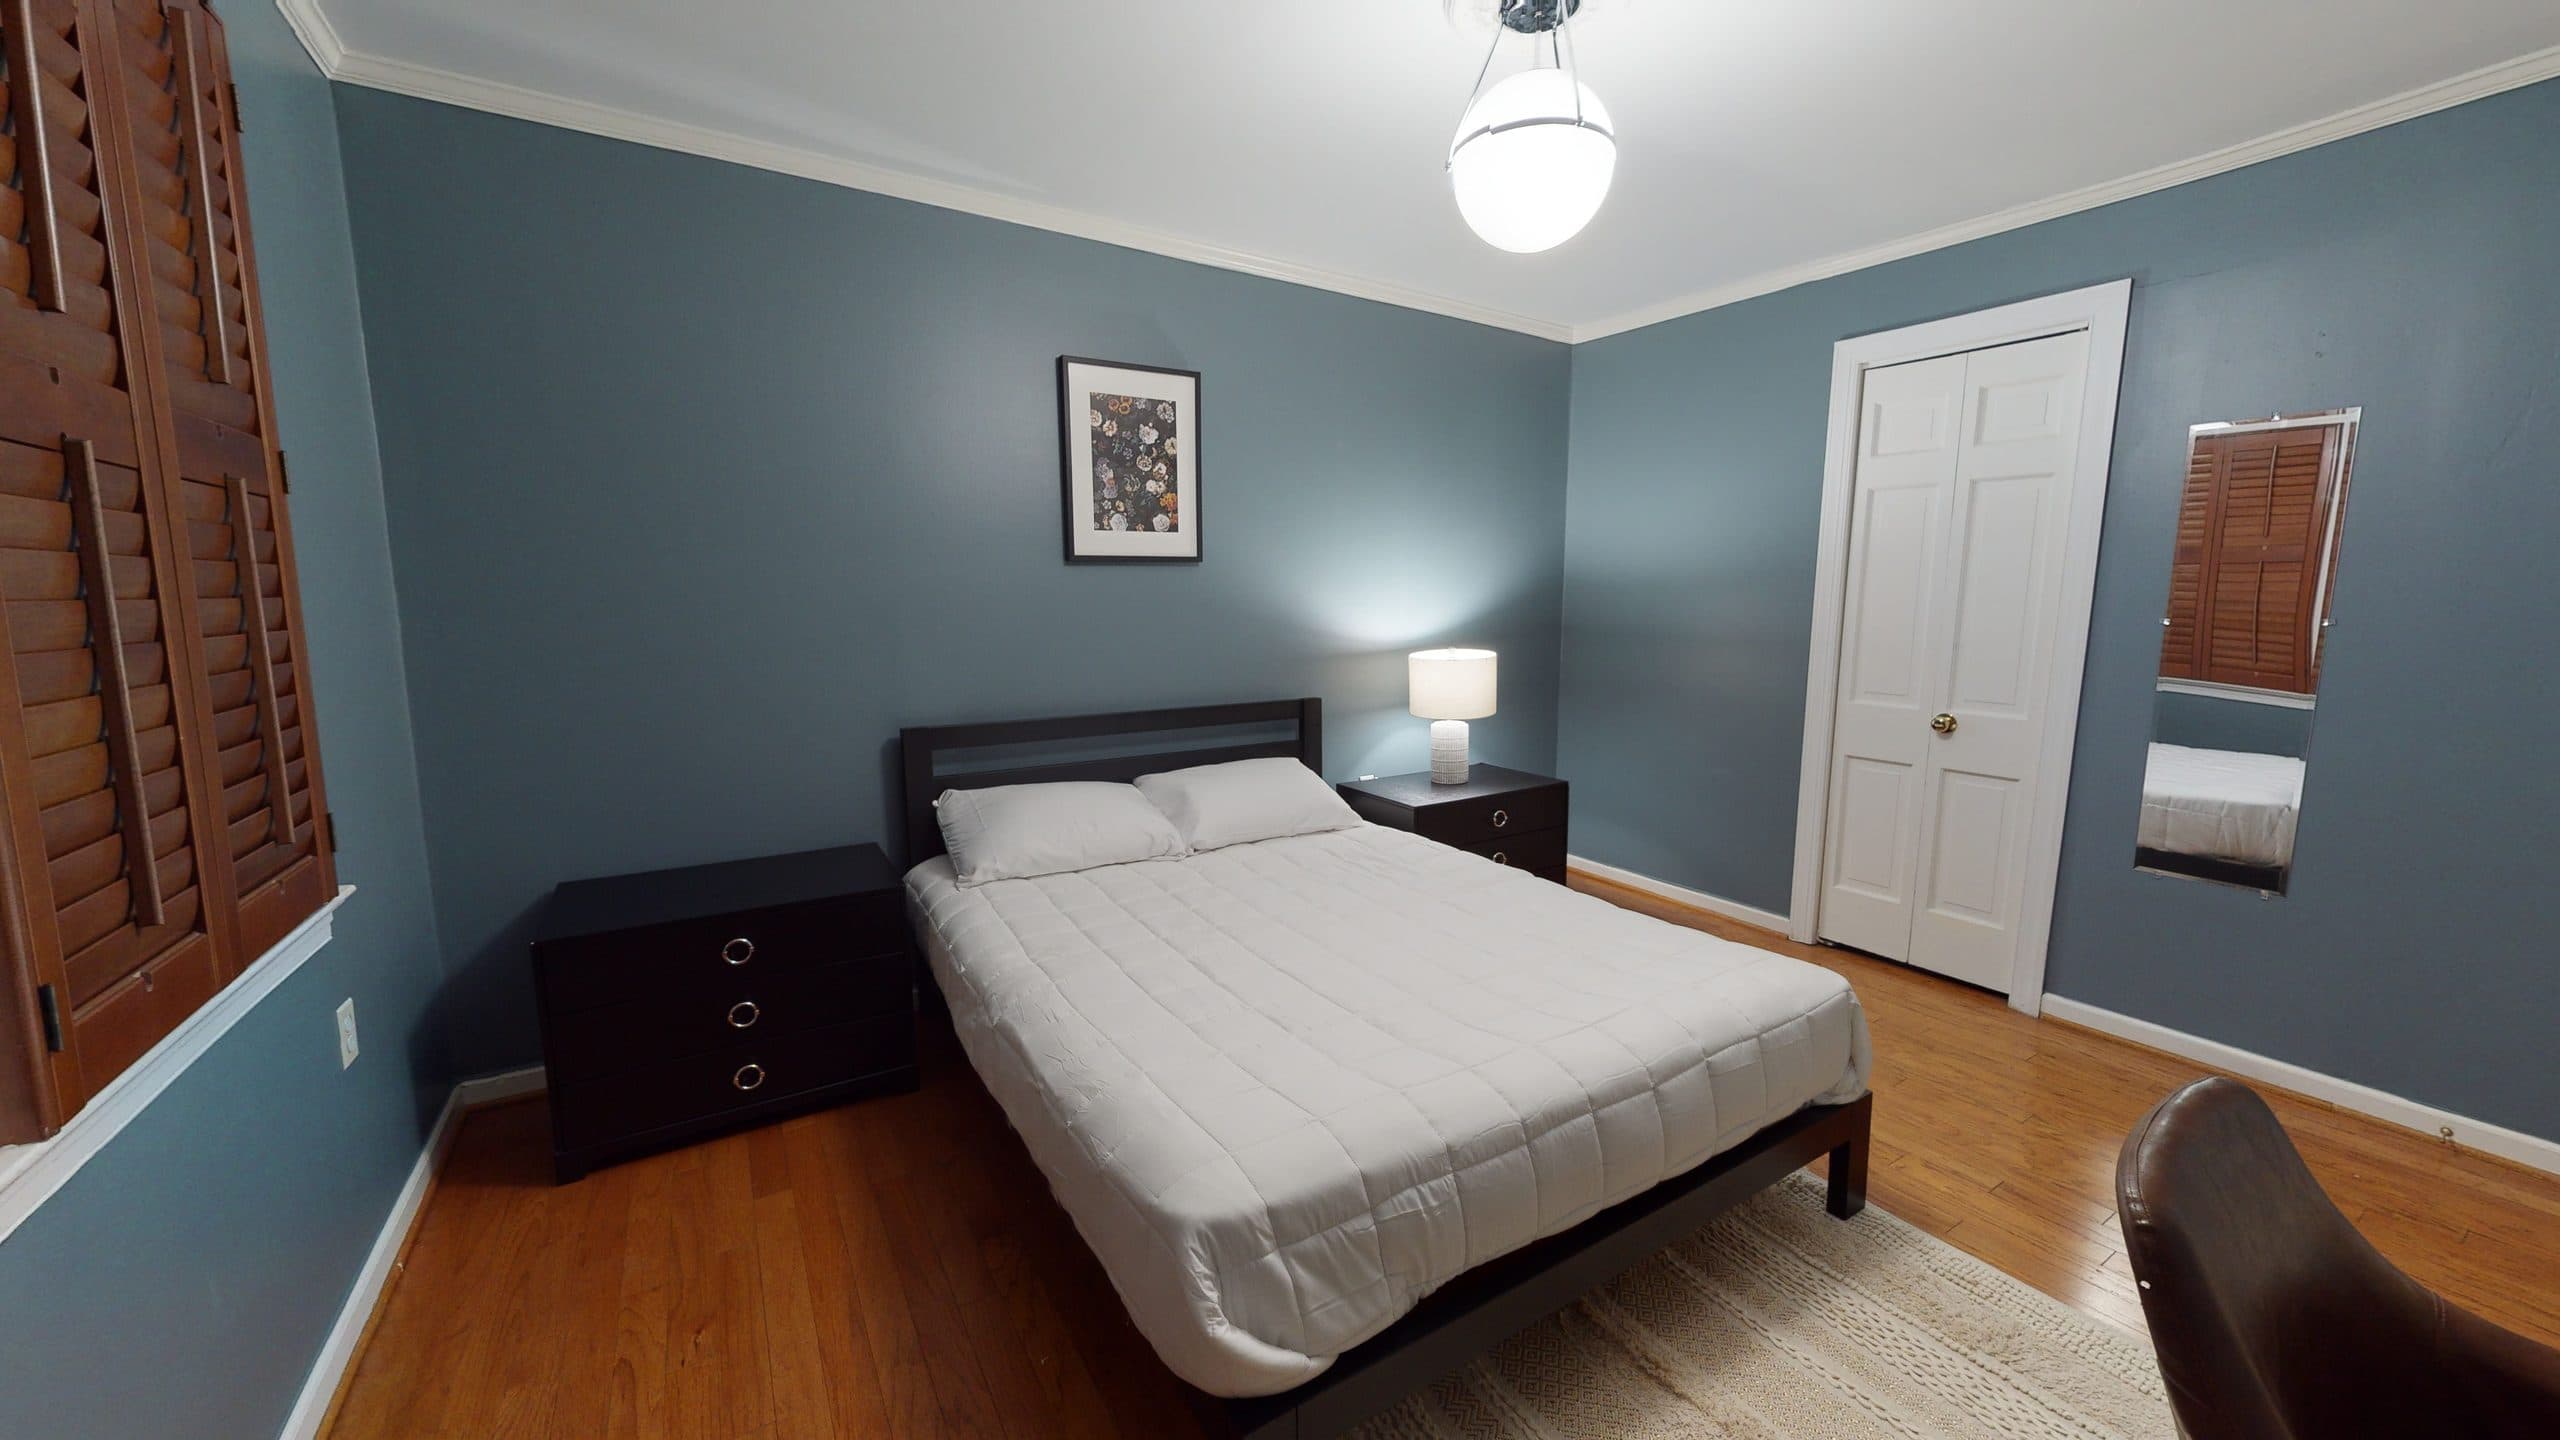 Photo 11 of #1425: Queen Bedroom 3F at June Homes